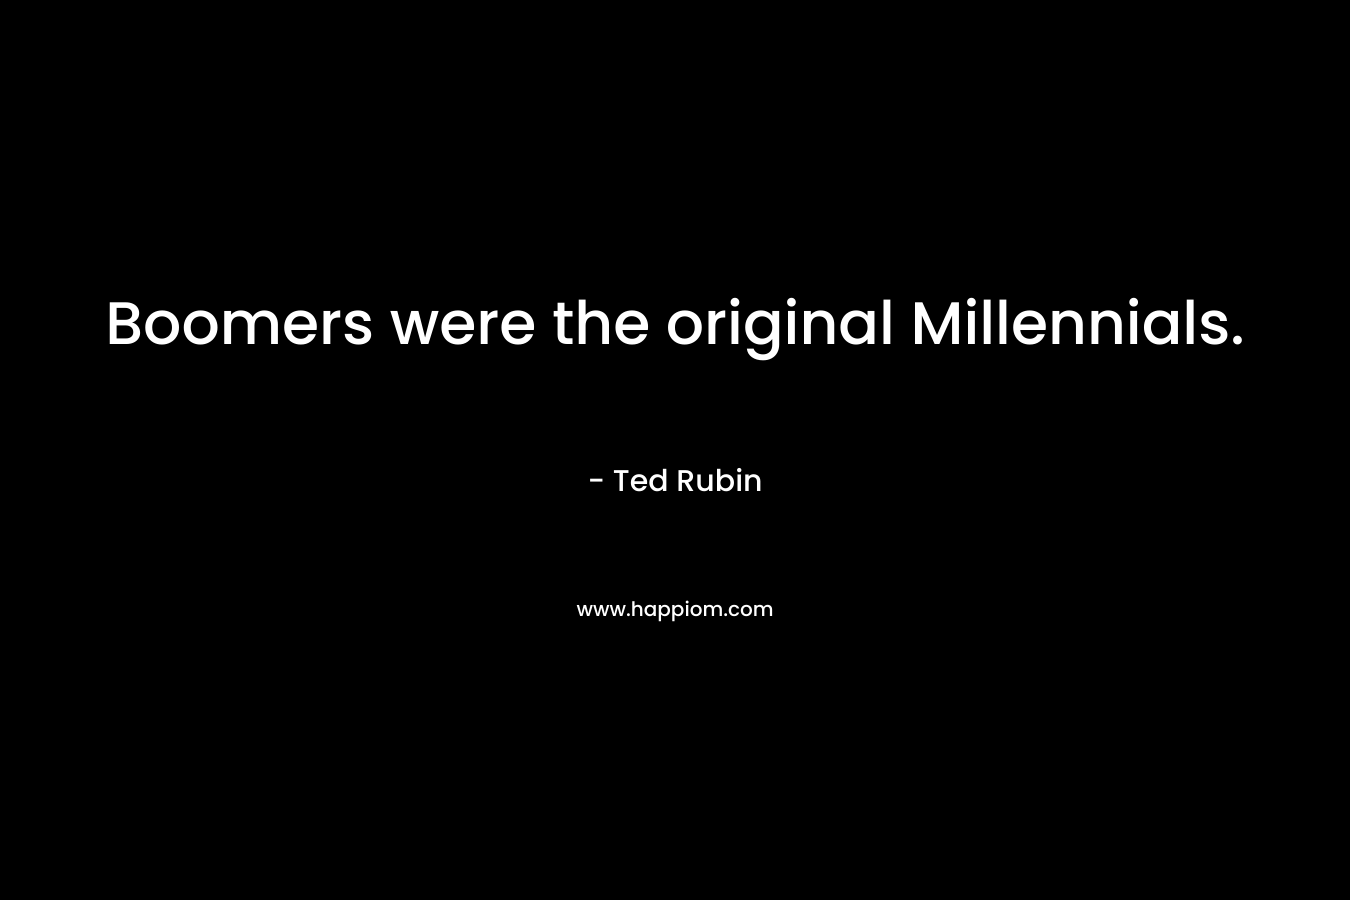 Boomers were the original Millennials.